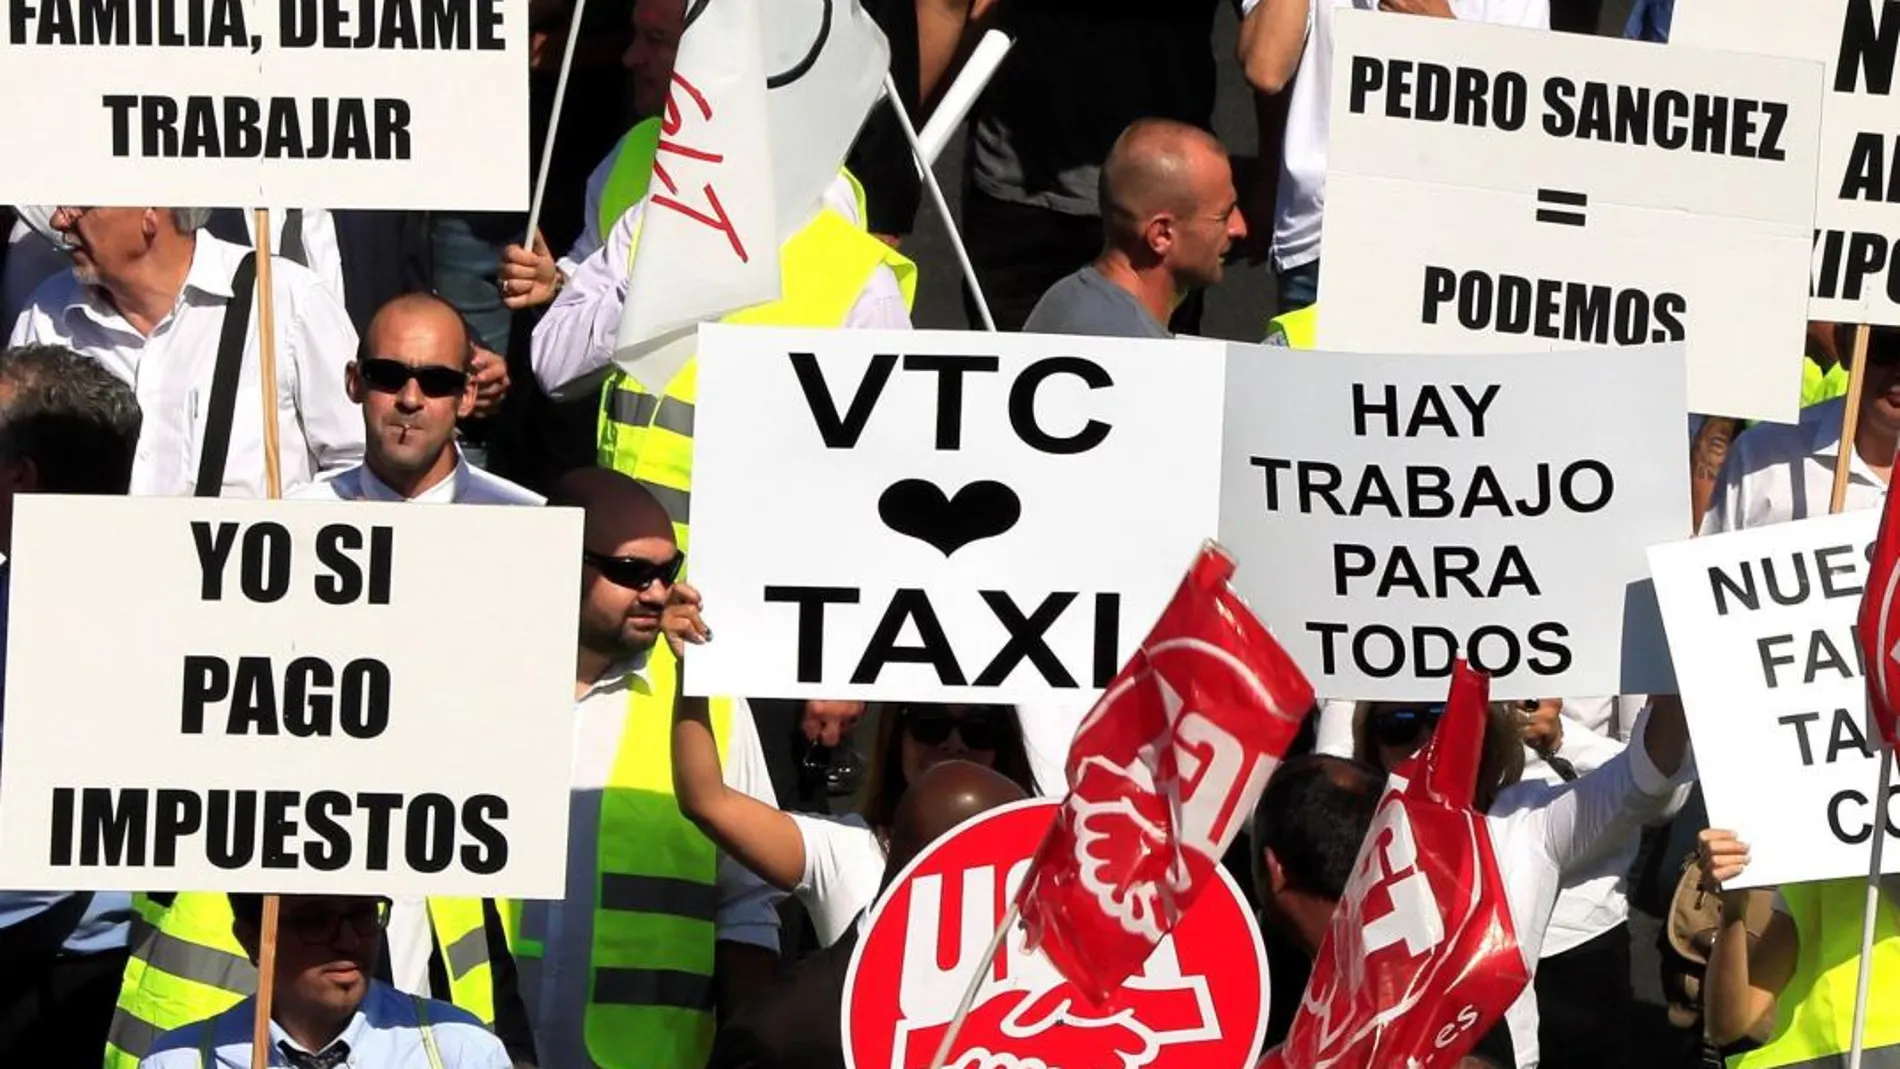 Conductores de vehículos de alquiler con conductor (VTC) se manifestaron en Madrid el pasado 27 de septiembre/Foto: Efe